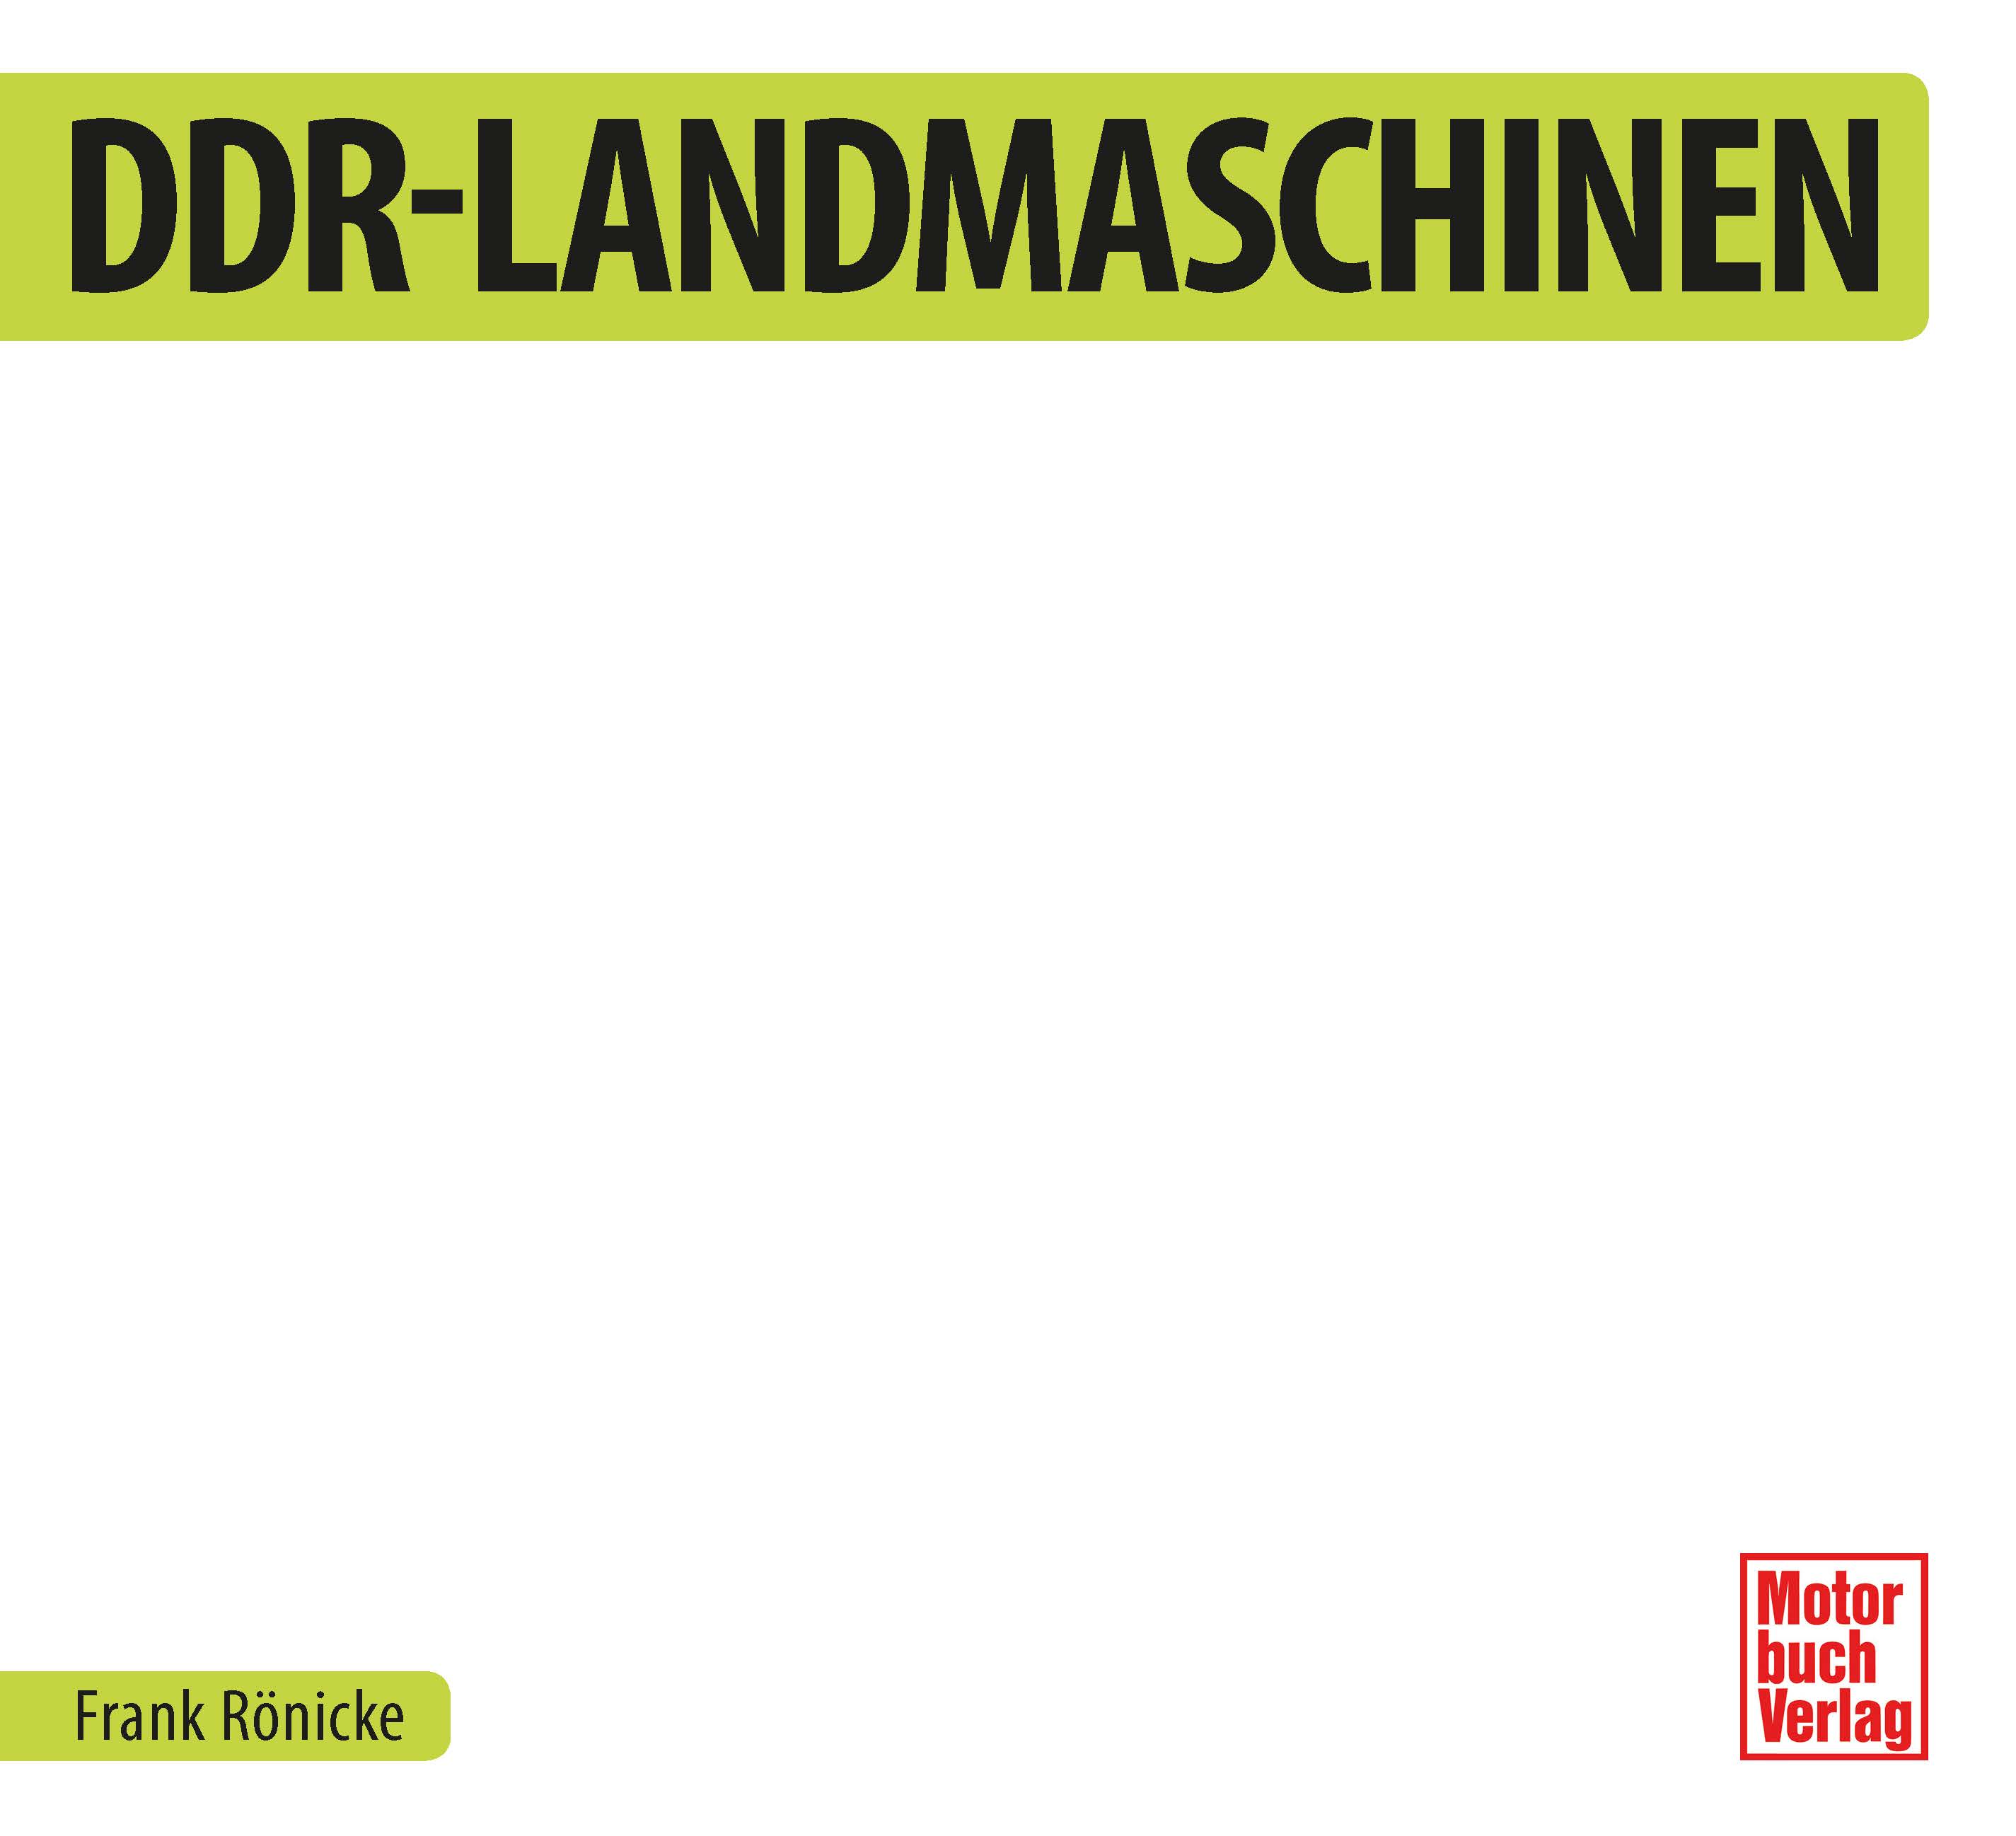 DDR Landmaschinen_Seite_02